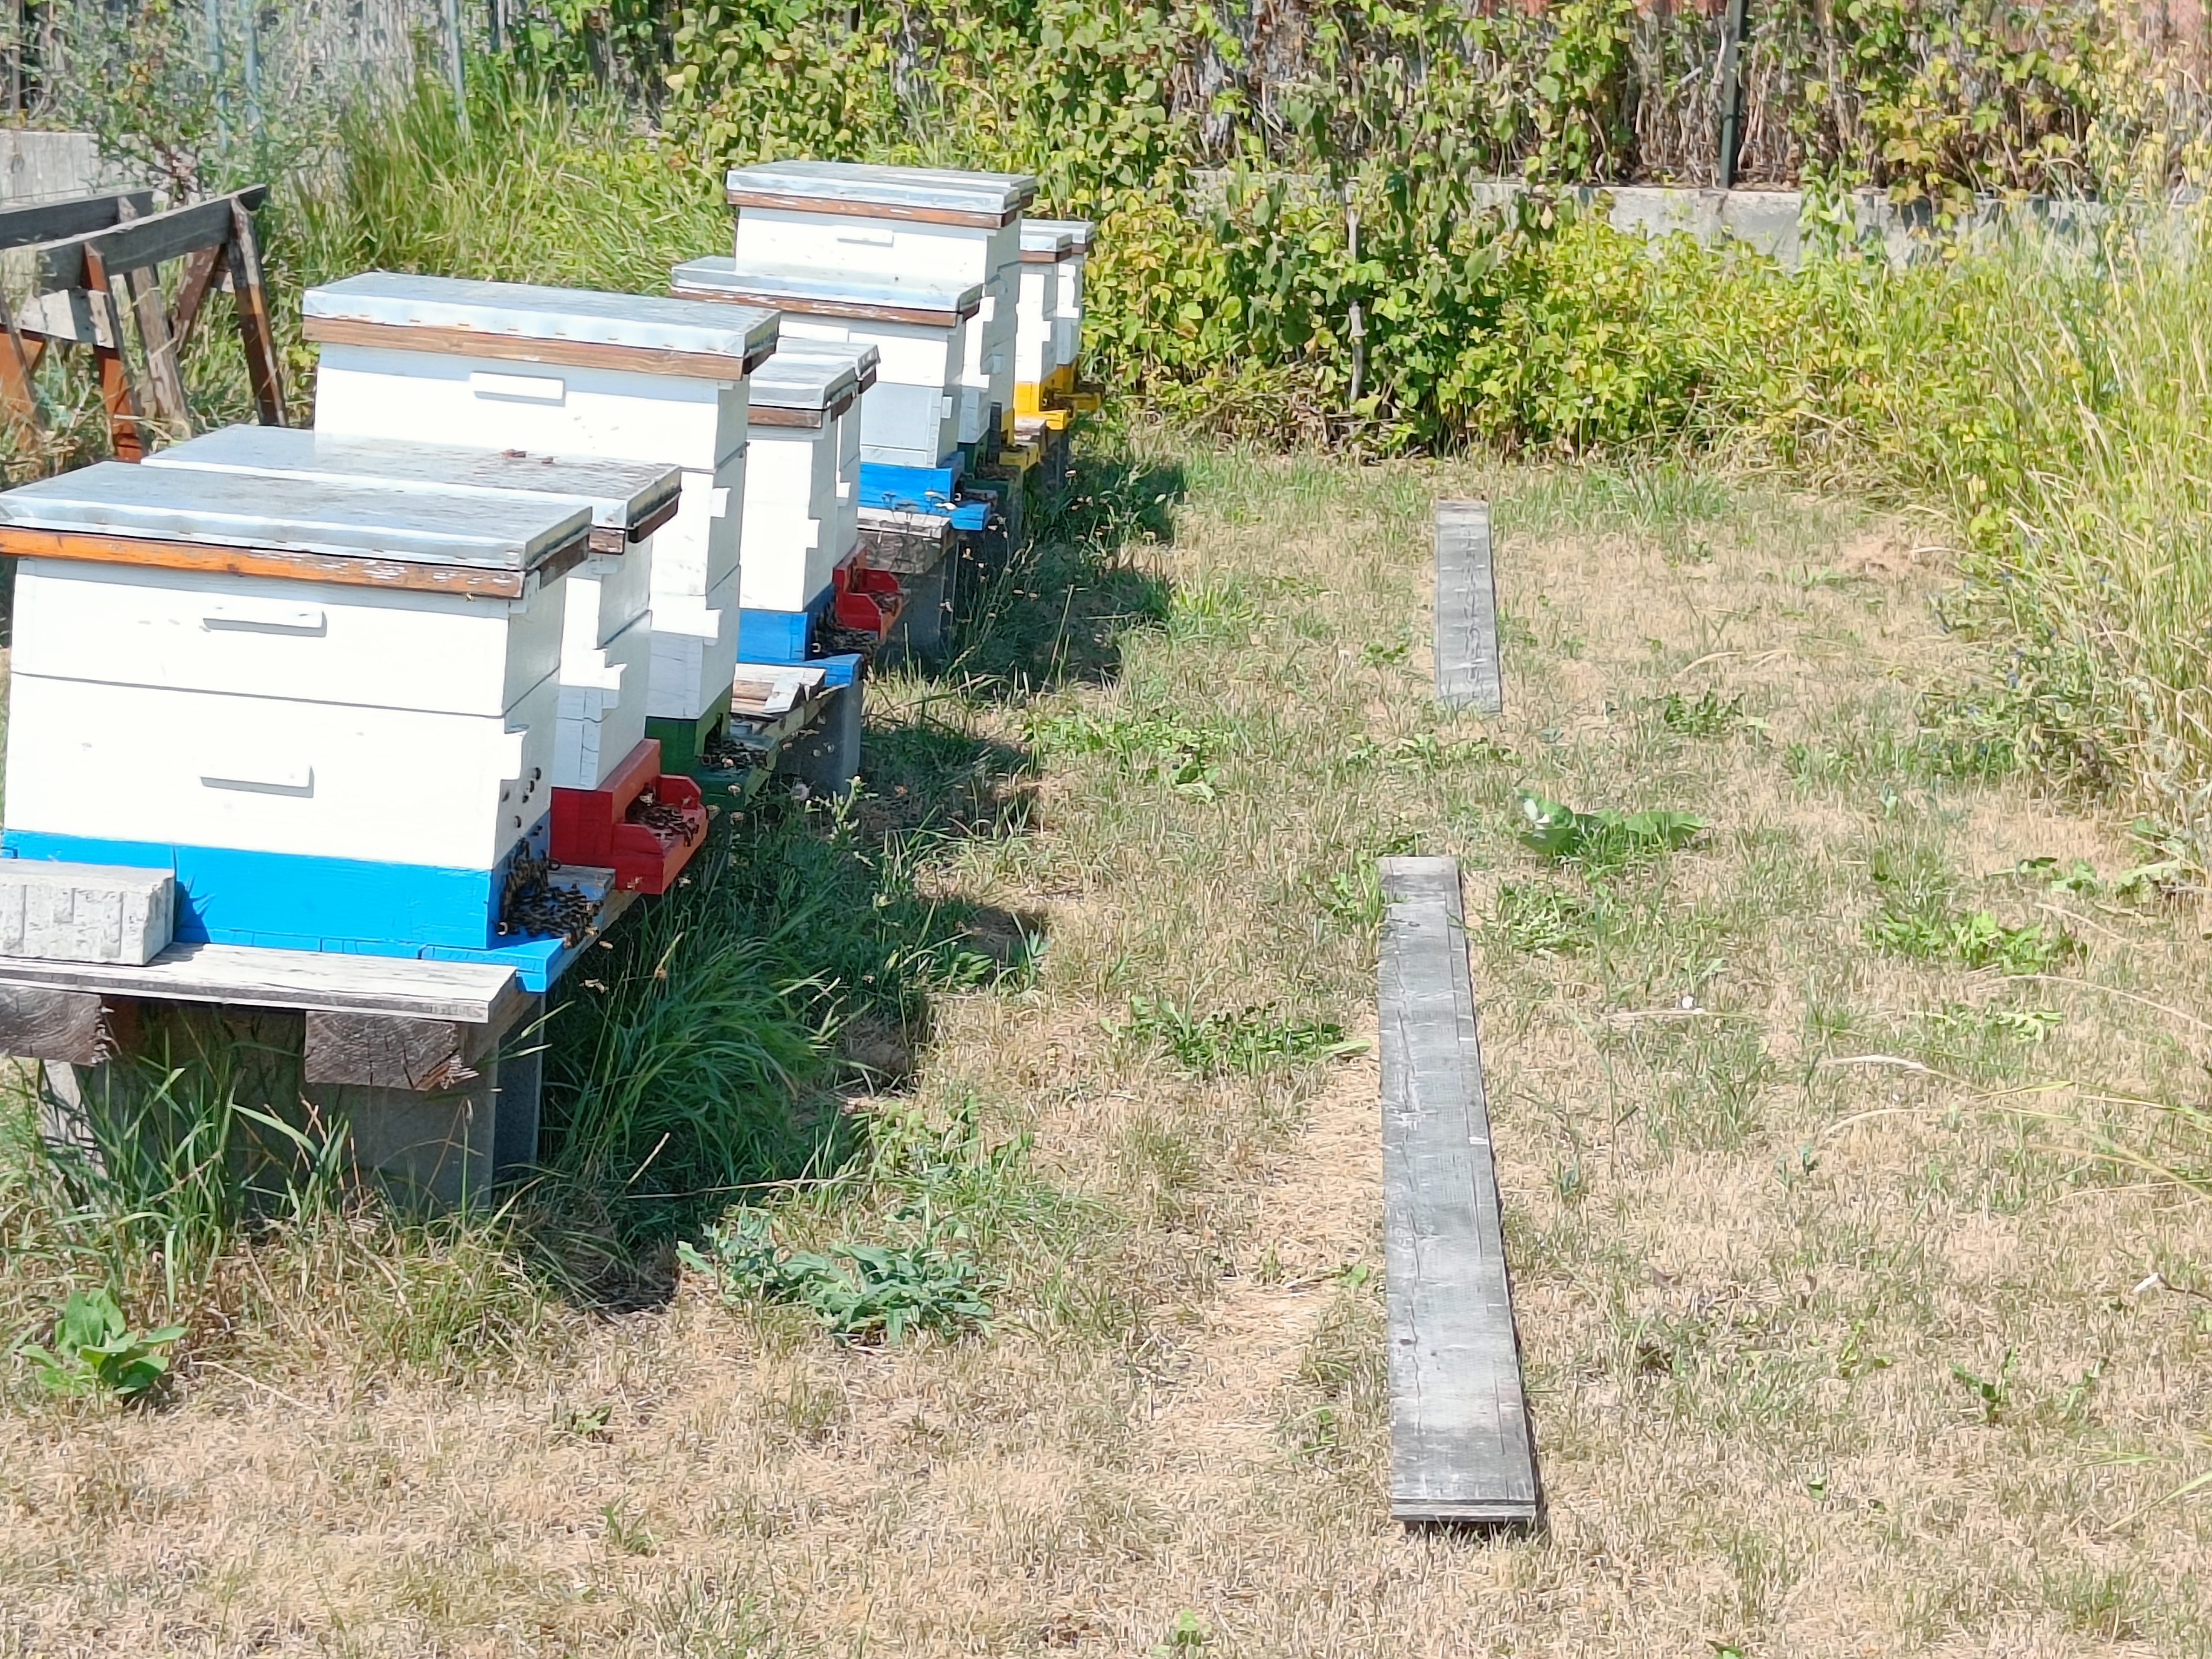 Pflanzen sind auf die Bestäubung durch Bienen angewiesen. Bienen ihrerseits brauchen Nektar und Pollen. Durch die Umgebungstemperatur sind die Bienen direkt und durch die Blüte der Pflanzen indirekt vom Klima abhängig. Die KLAR! Leithaland hat sich zum Ziel gesetzt, gemeinsam mit den Entscheidungsträgern, geeignete Flächen für Bienenweiden zu identifizieren und als Bienenwiesen aufzubereiten.